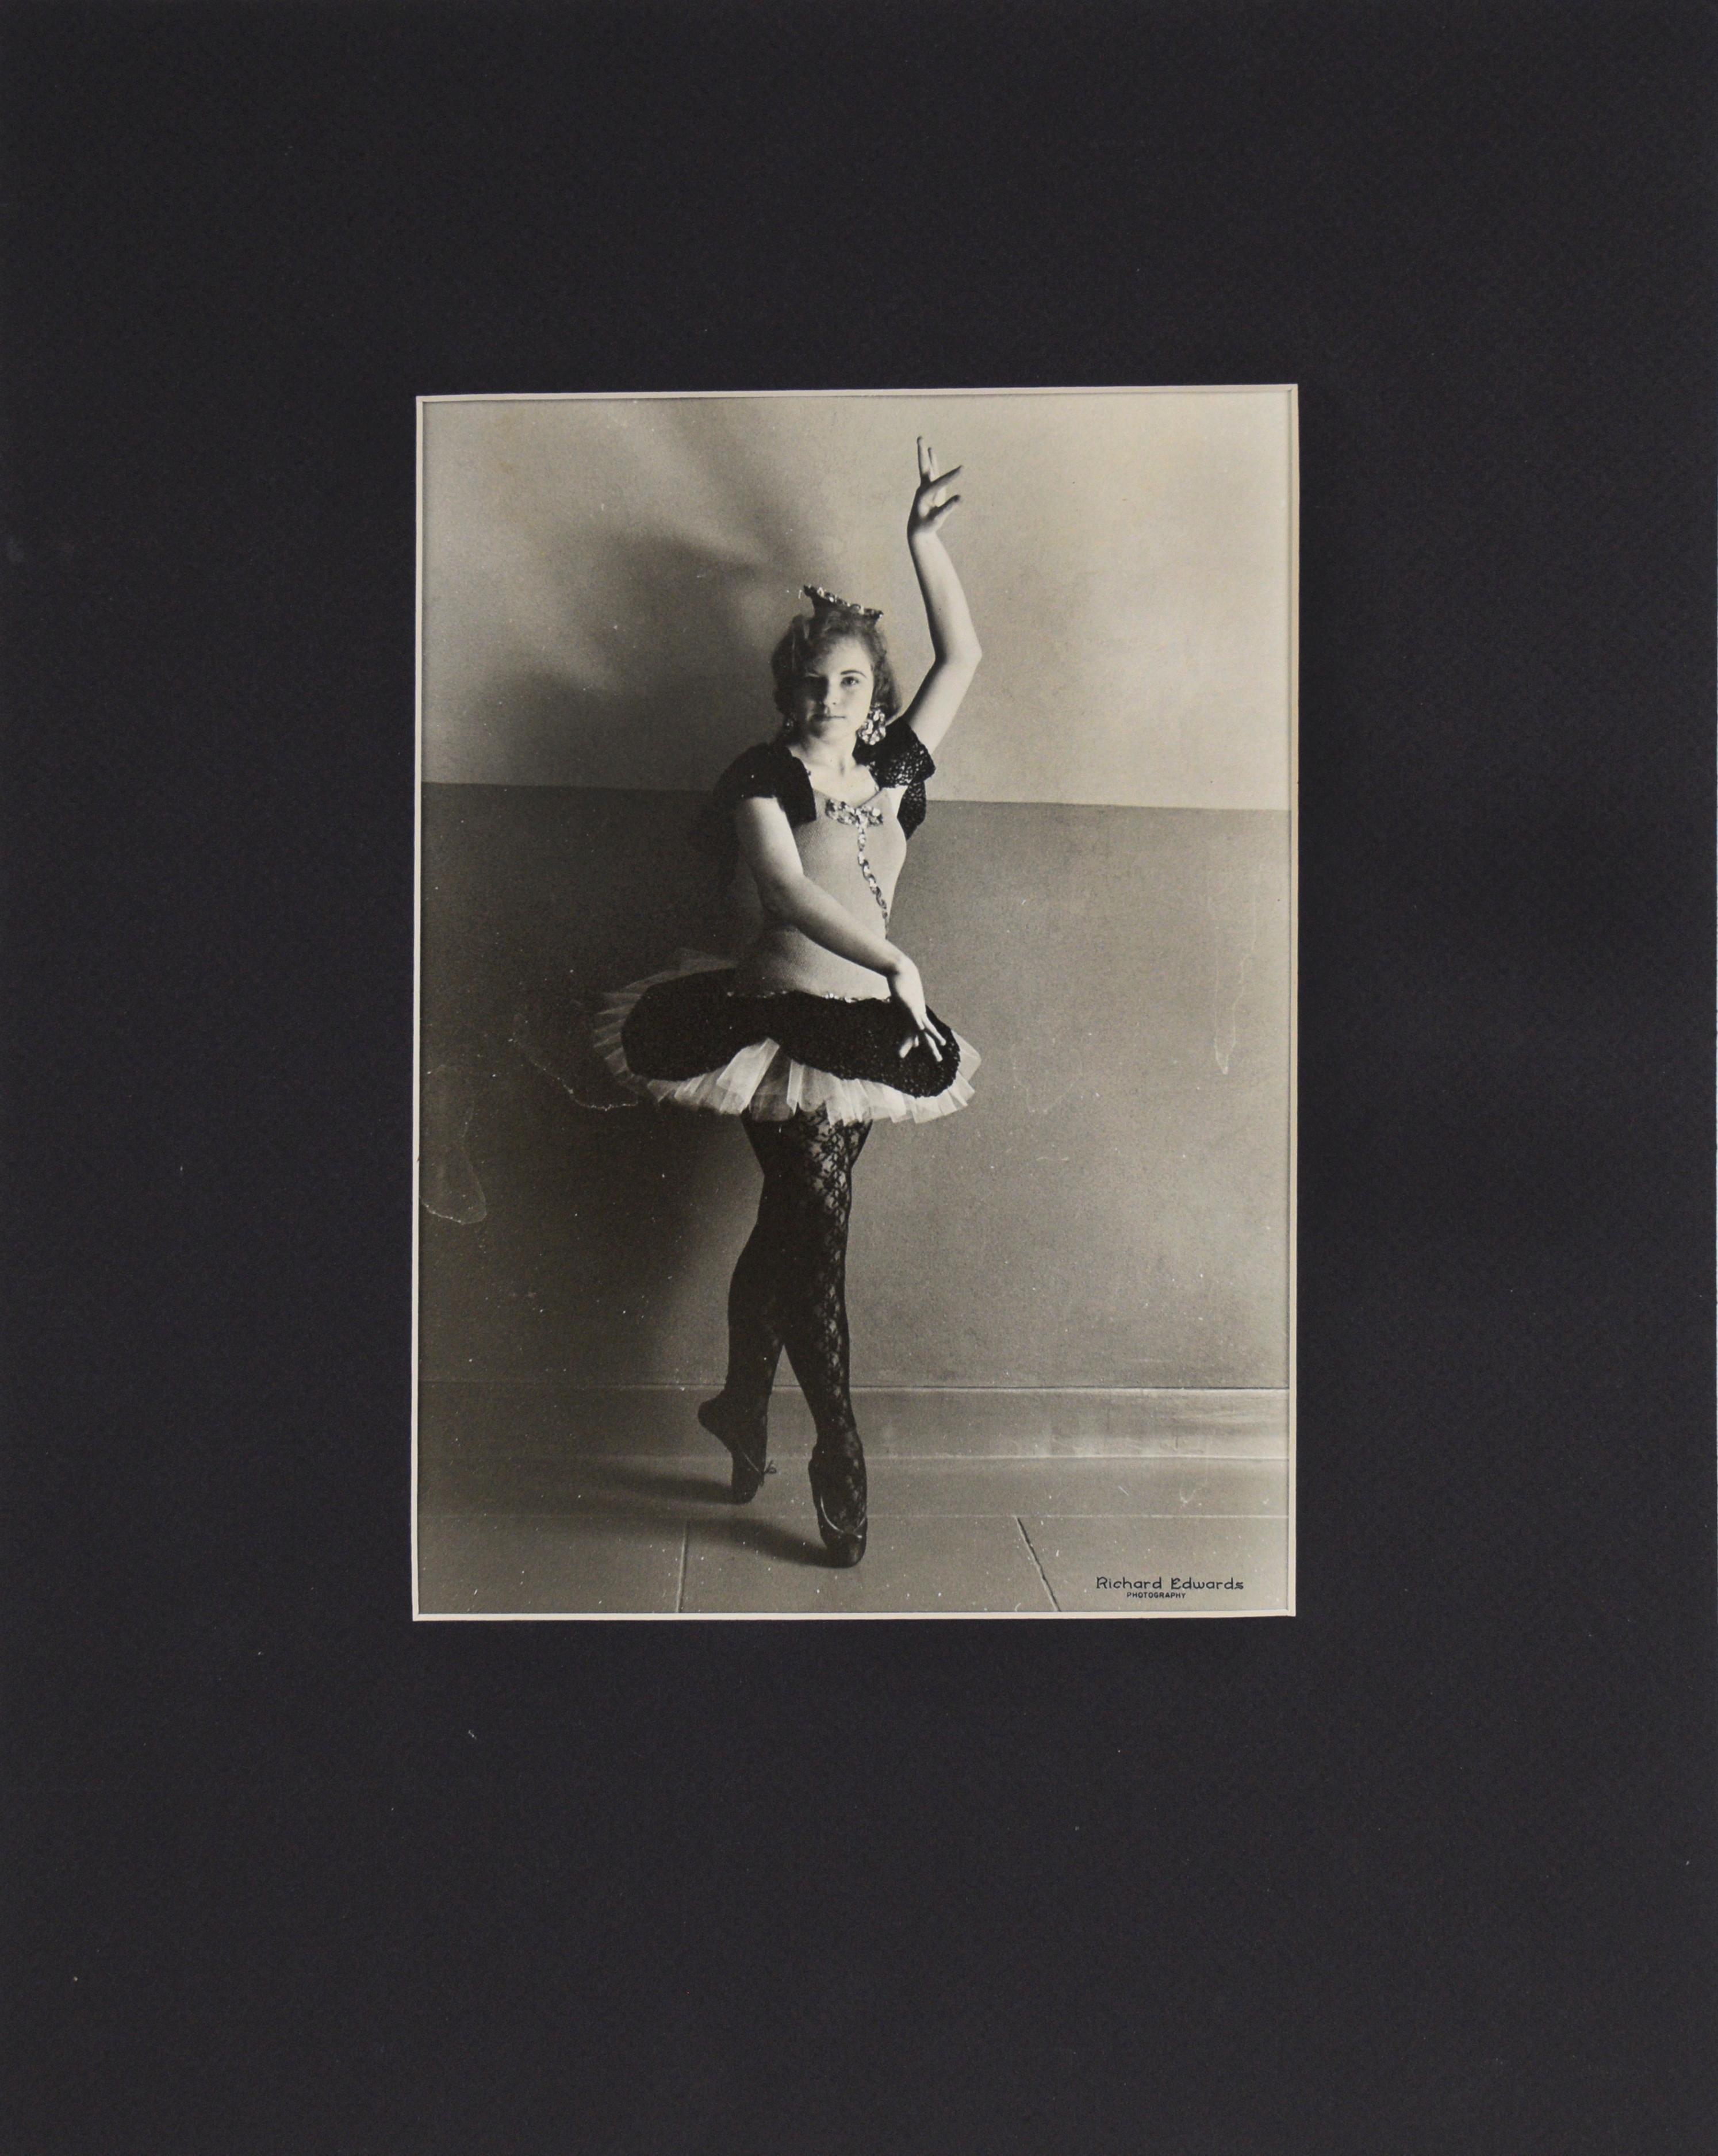 Young Ballerina In Pose San Francisco Richard Edwards, San Francisco

Foto einer jungen Ballerina beim Posieren. Sie hält ihre rechte Hand über ihren Kopf, während ihre linke Hand vor ihr liegt. Das junge Mädchen trägt ein schwarz-weißes Tutu, einen